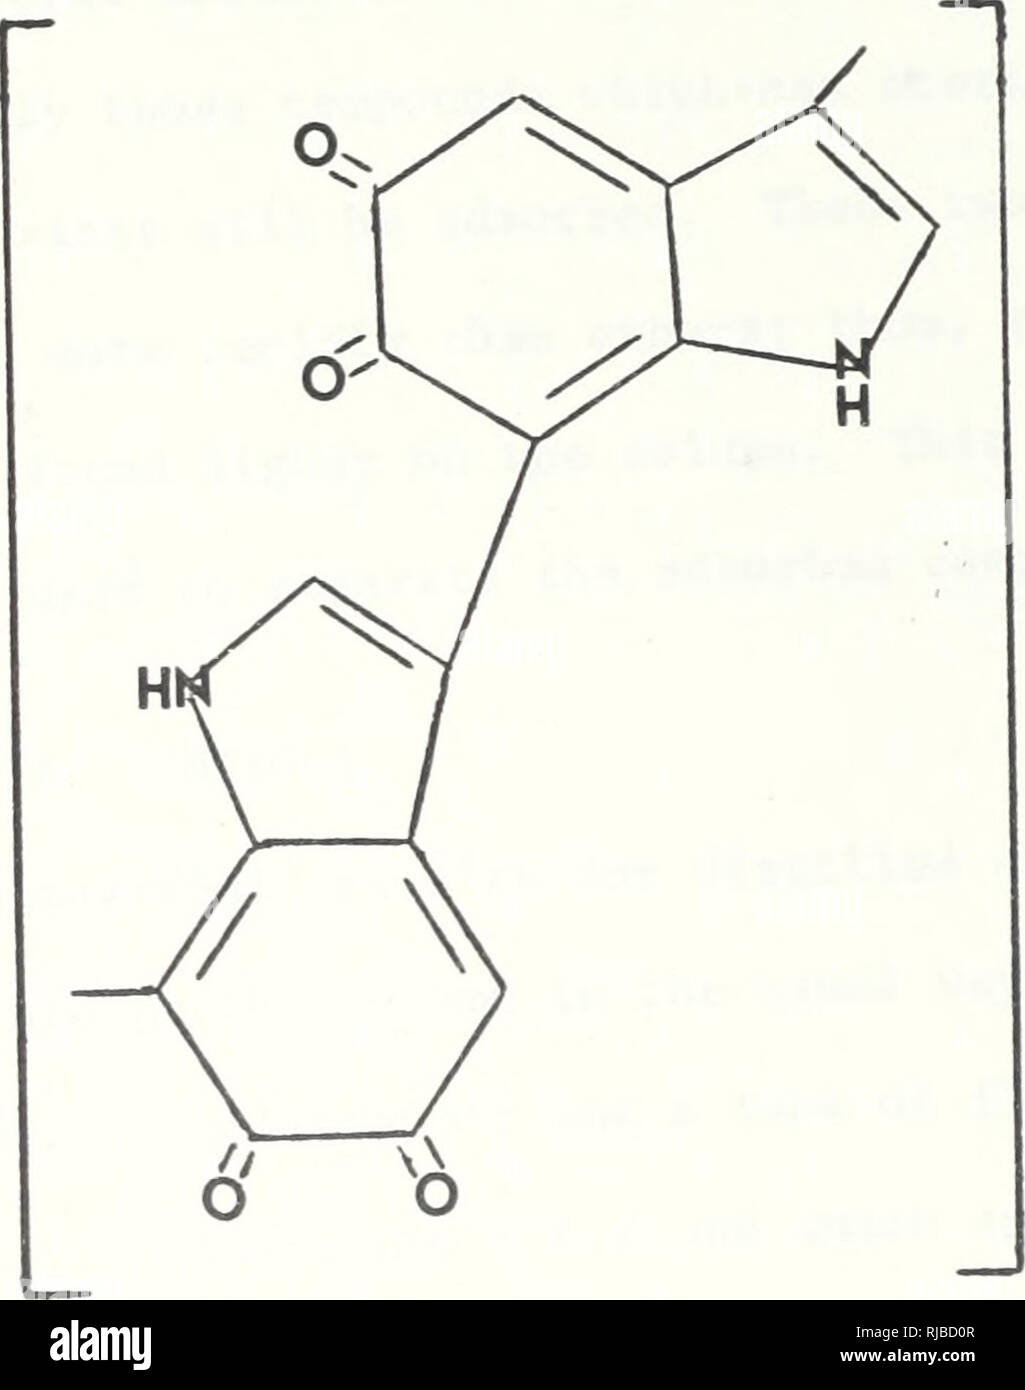 . Charakterisierung der Gelbstoffe in Monterey Bay von Nylon Adsorption, UV, Papier und die Chromatographie. Ozeanographie. Q VoH-J-Na OHQ âO'Na * - f H 20 Abb. 45. Phenol Konjugiere Säure, Base Reaktion H O - A - C - (CH2) 4-C-N-(CH2)6-b h Abb. 46. Hylon molekularen Struktur. p, 47 Duursma der Huminsäuren Struktur 80. Bitte beachten Sie, dass diese Bilder sind von der gescannten Seite Bilder, die digital für die Lesbarkeit verbessert haben mögen - Färbung und Aussehen dieser Abbildungen können nicht perfekt dem Original ähneln. extrahiert. Lewis, Laird William.. Monterey, Kalifornien: US Naval Postgraduate School Stockfoto